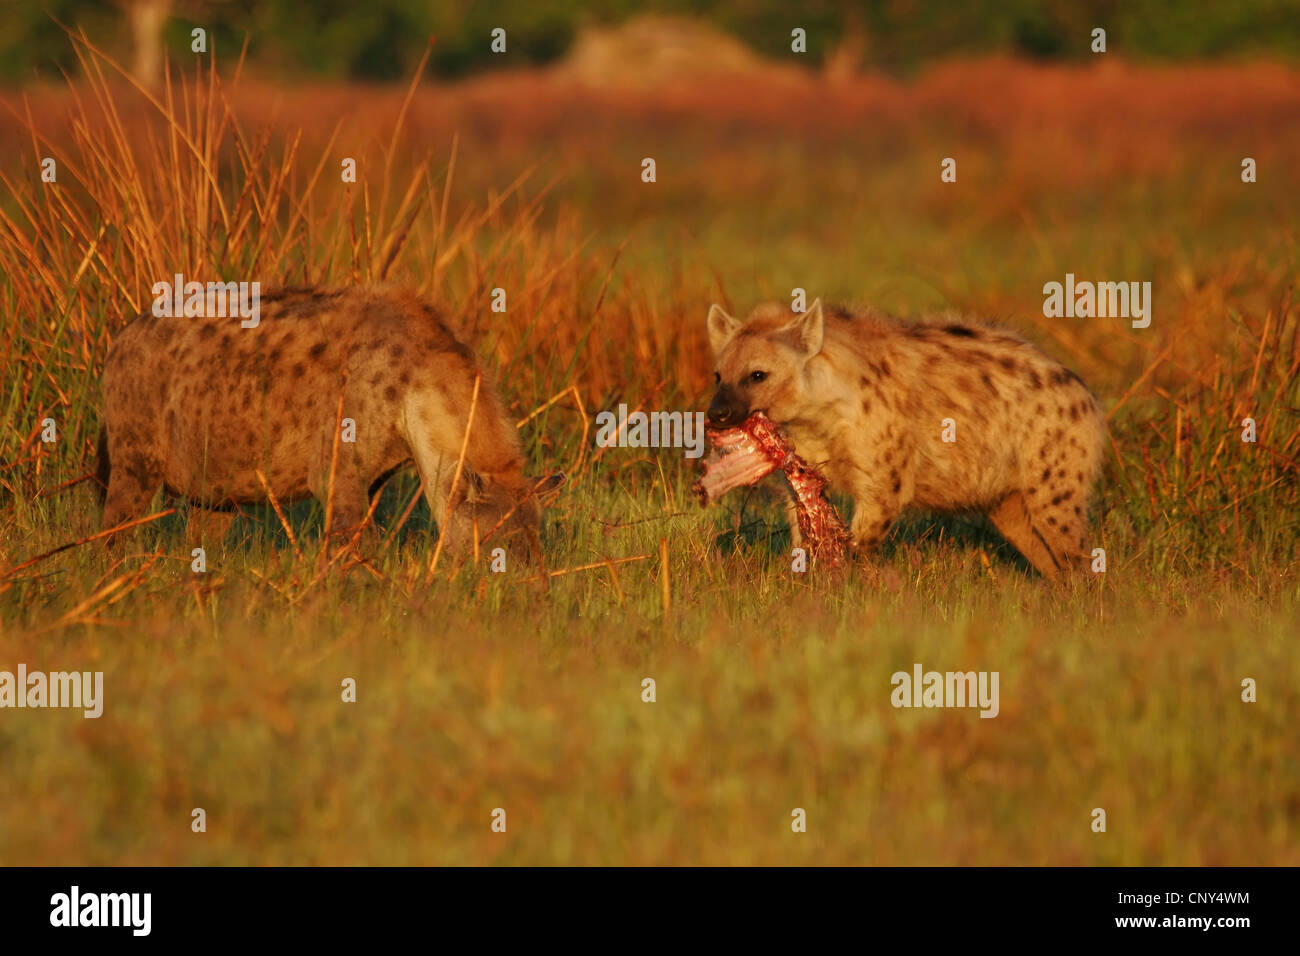 L'Hyène tachetée (Crocuta crocuta), deux animaux dans la savane, se nourrir d'un cadavre, Botswana, Chobe National Park Banque D'Images